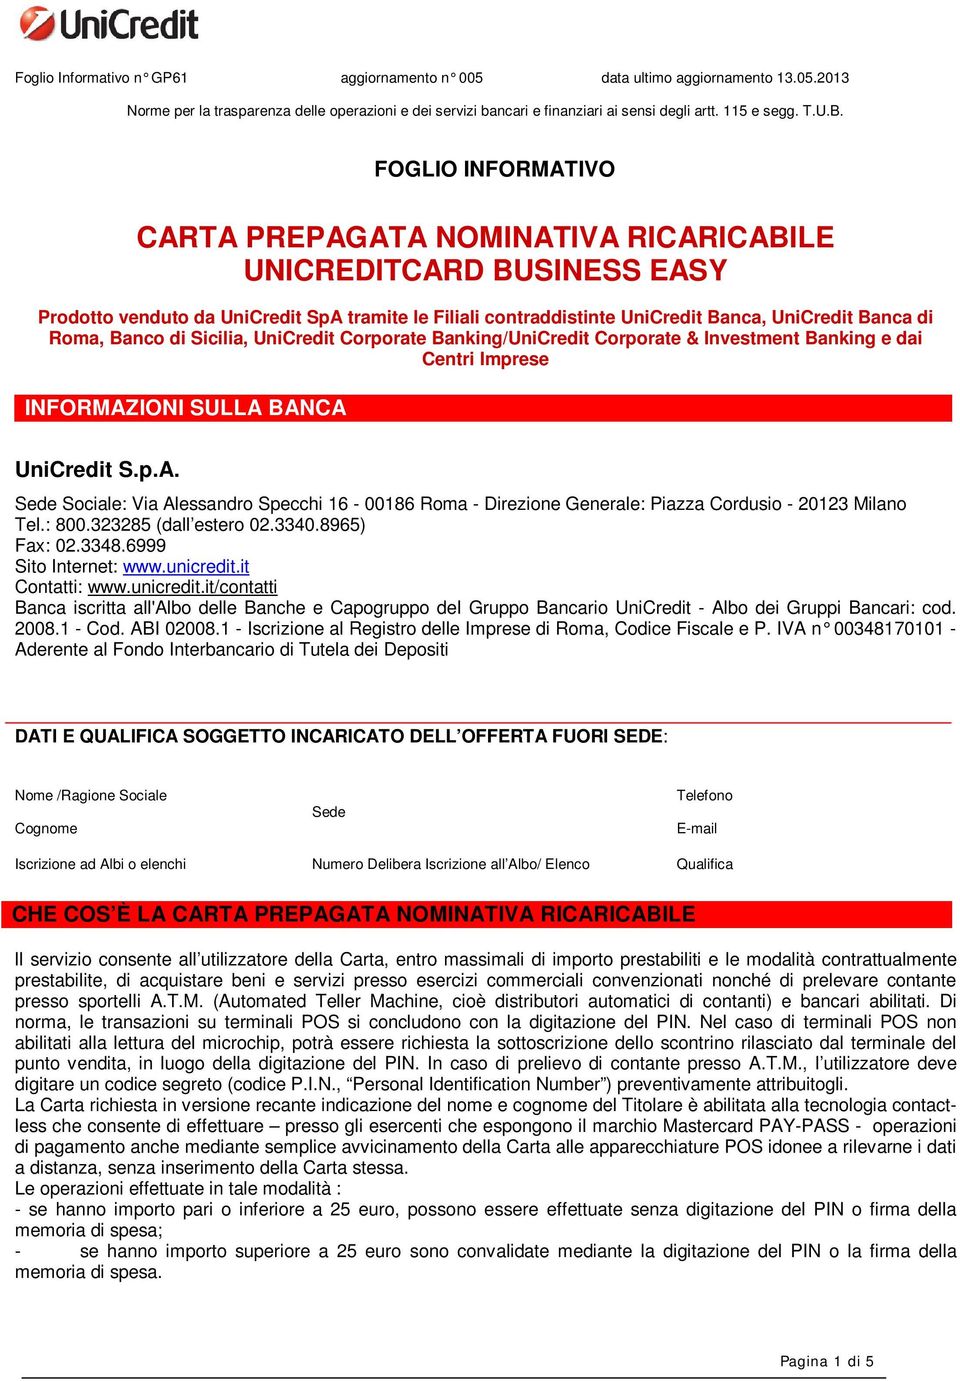 Carta Prepagata Nominativa Ricaricabile Unicreditcard Business Easy Pdf Free Download